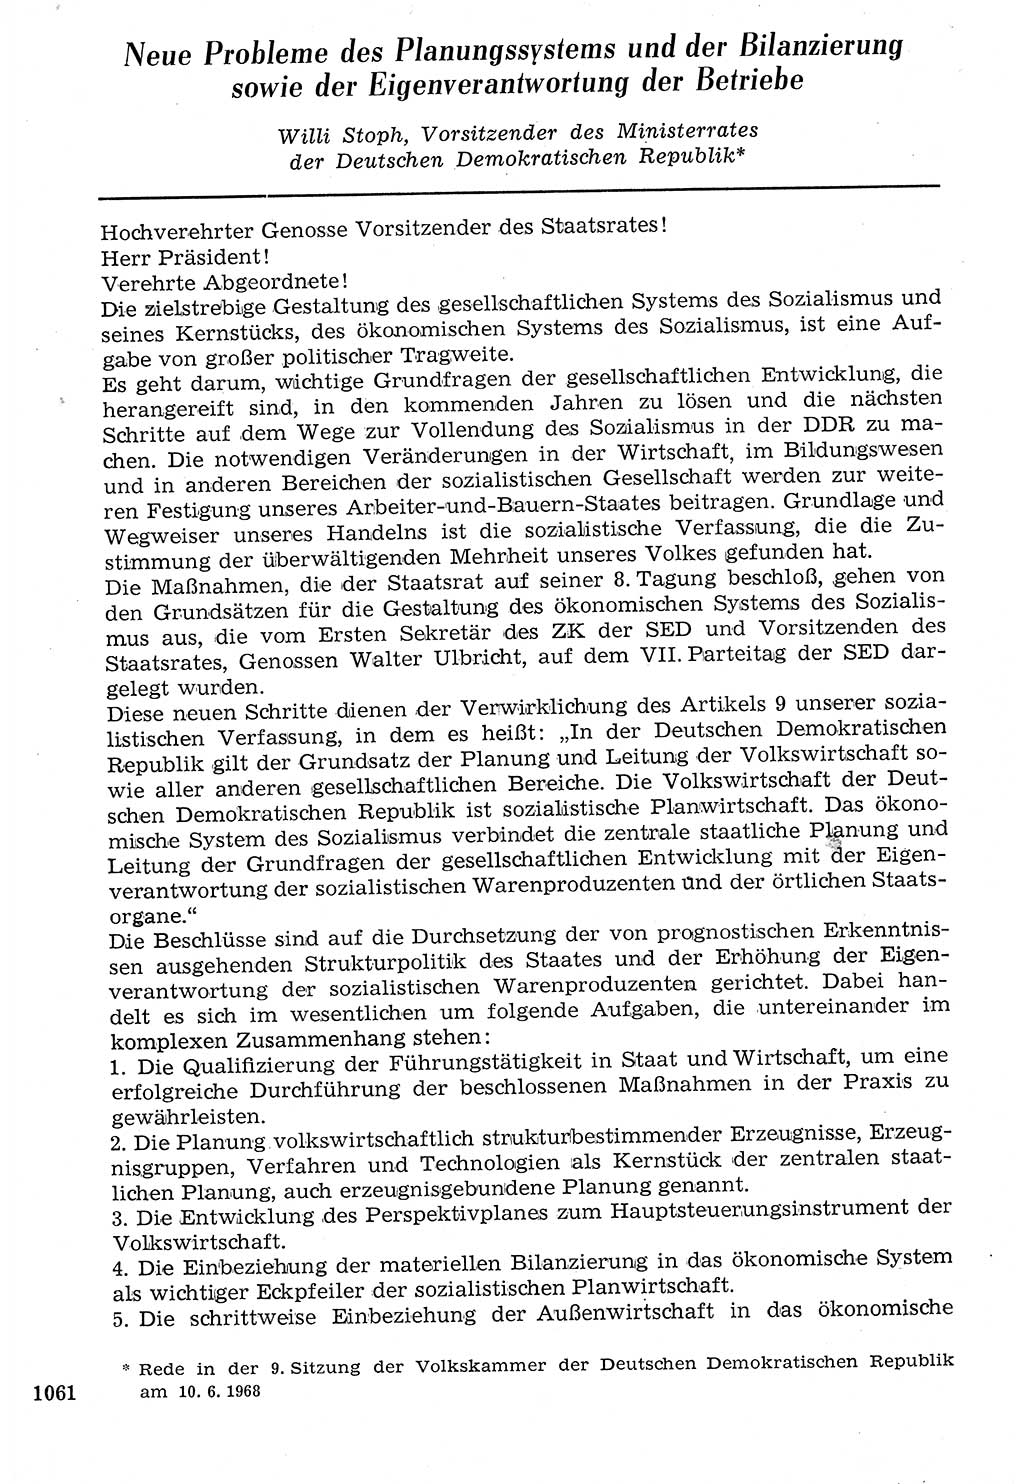 Staat und Recht (StuR), 17. Jahrgang [Deutsche Demokratische Republik (DDR)] 1968, Seite 1061 (StuR DDR 1968, S. 1061)